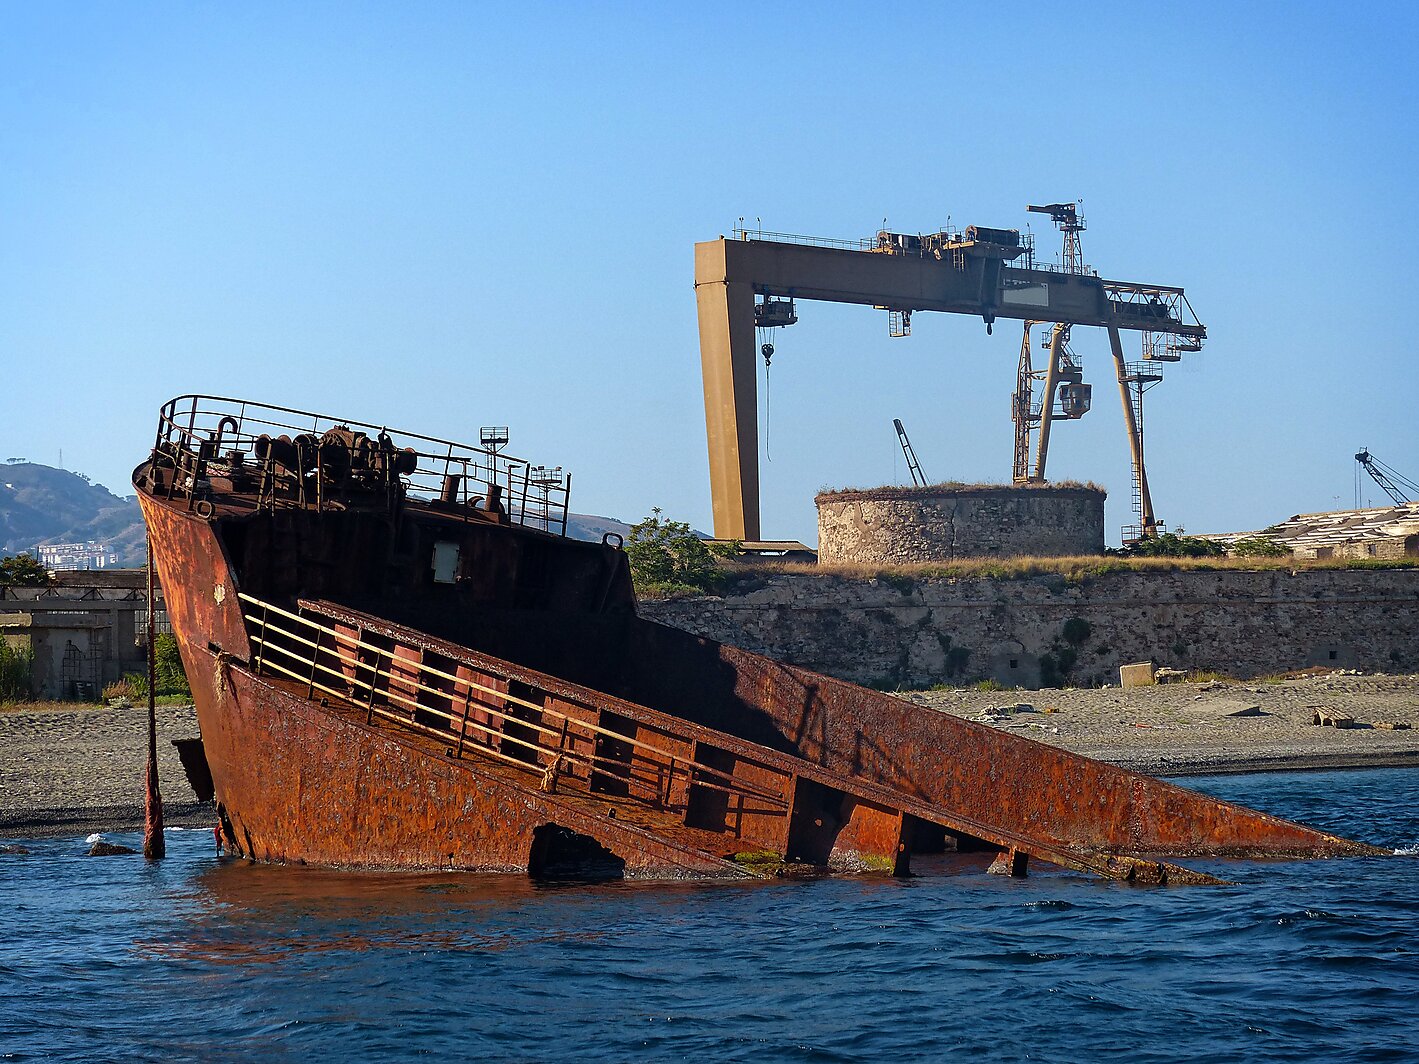 Wrecked Ship